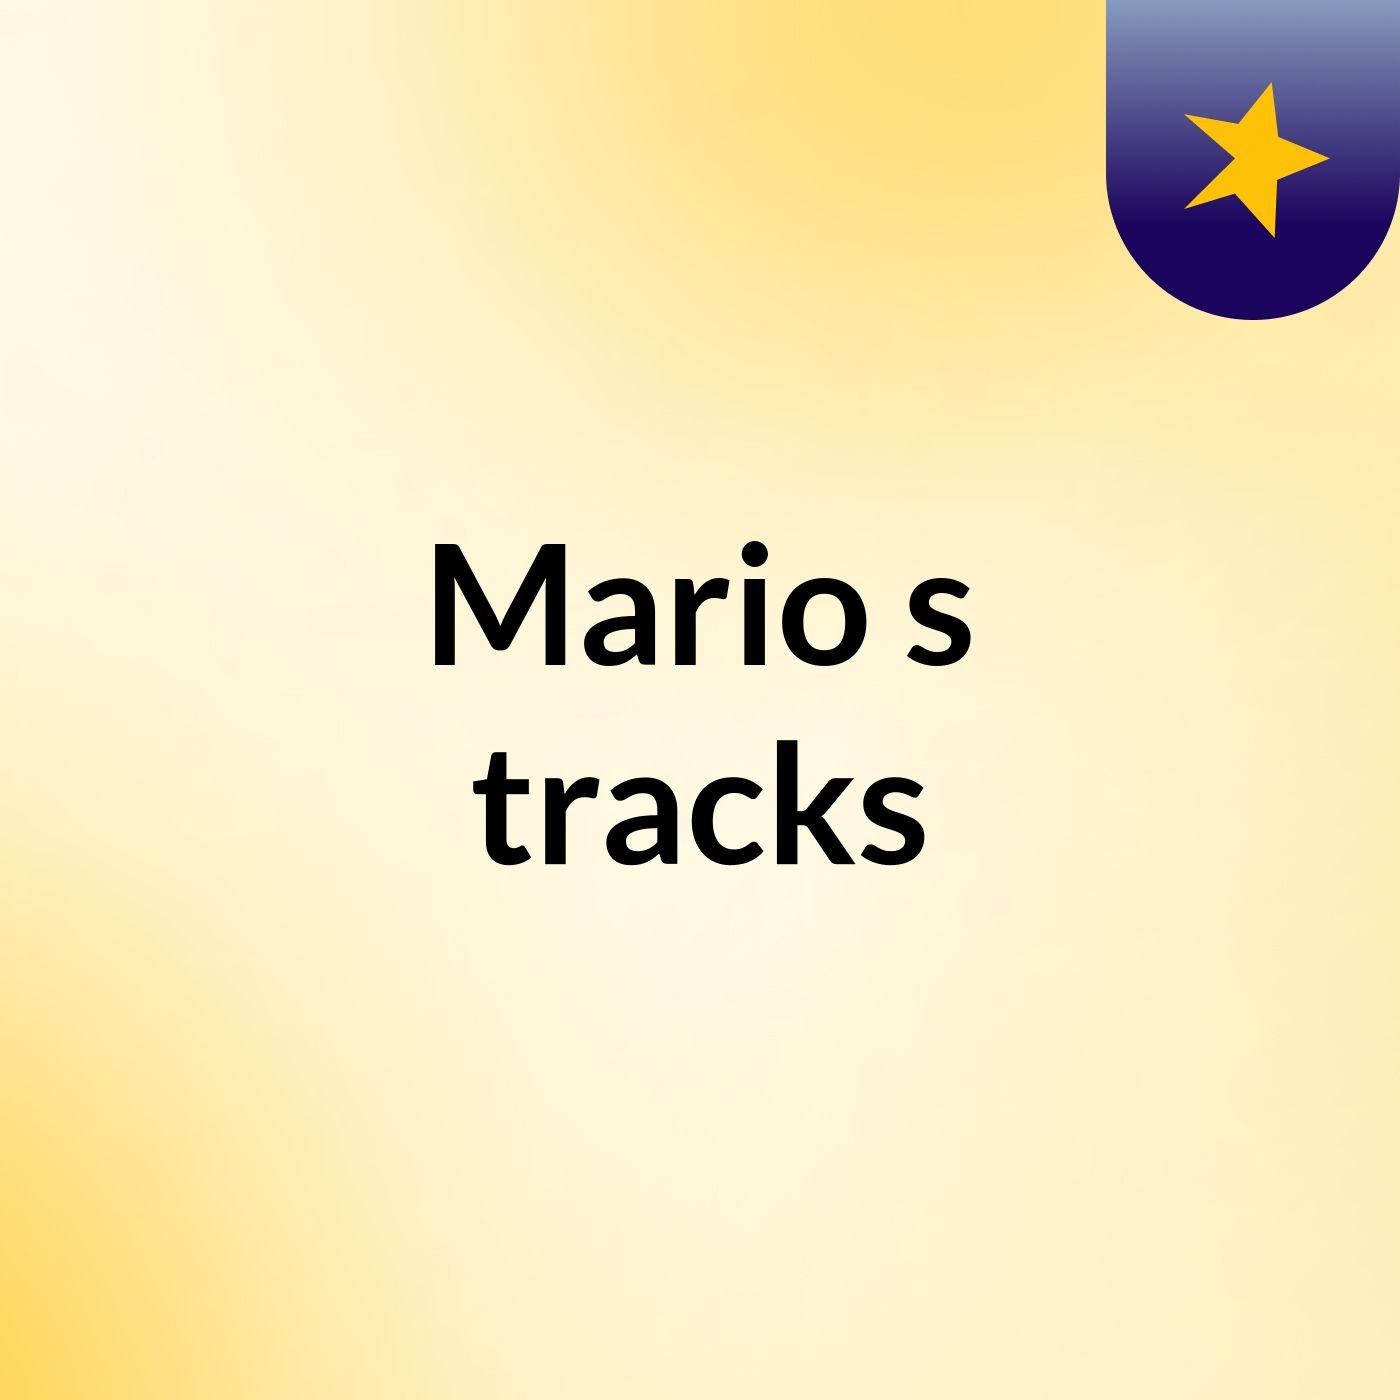 Mario's tracks